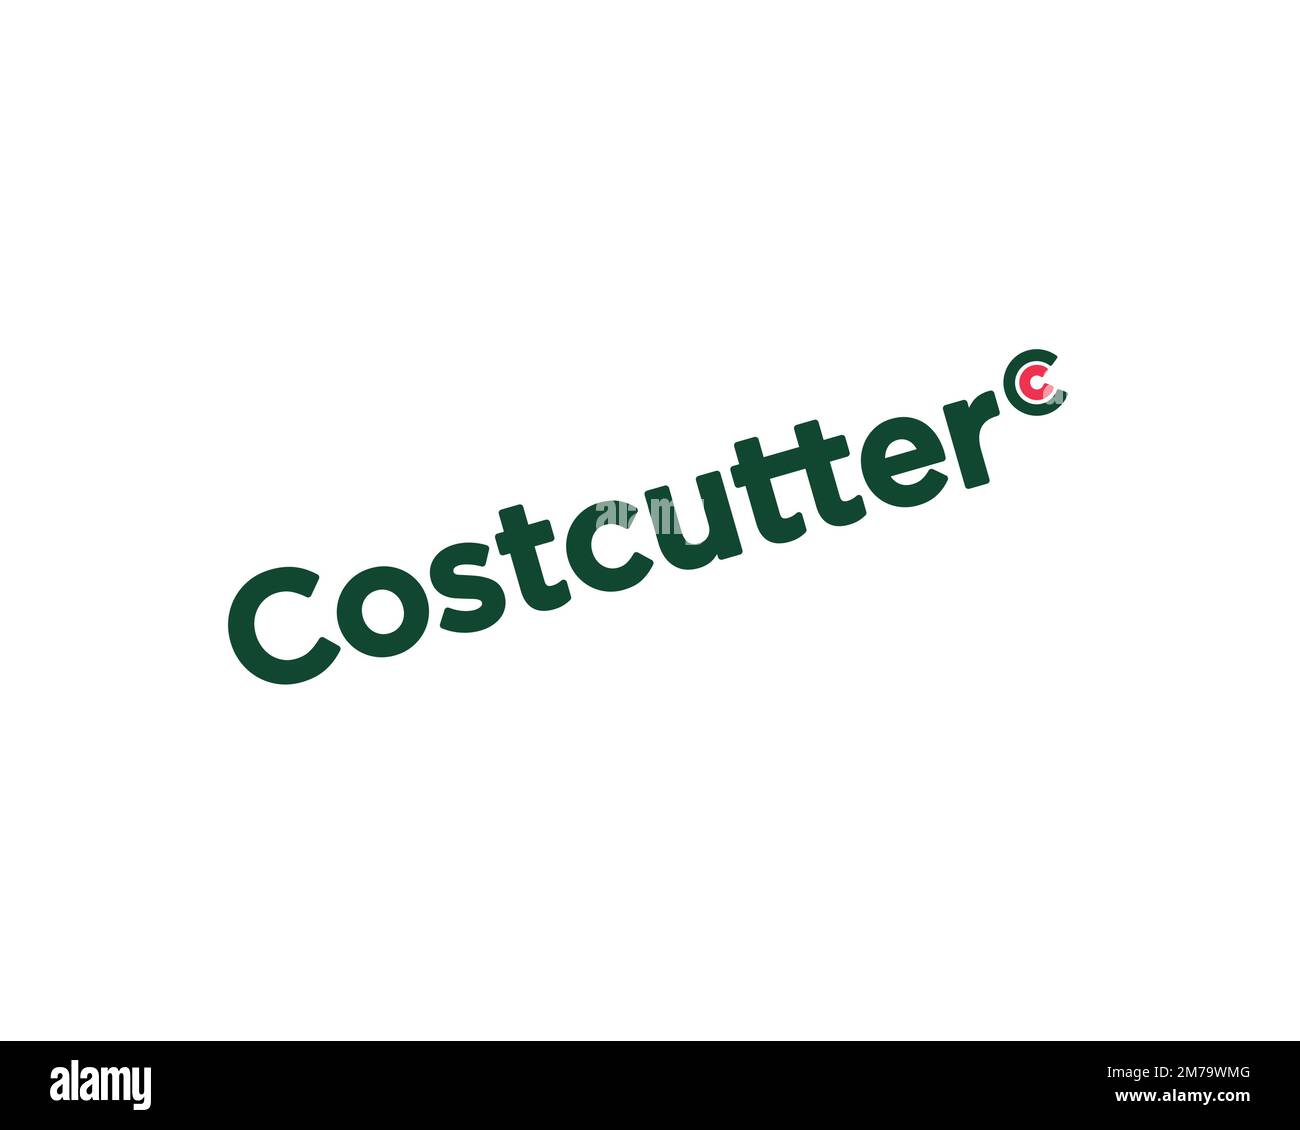 Costcutter, logo pivoté, fond blanc Banque D'Images